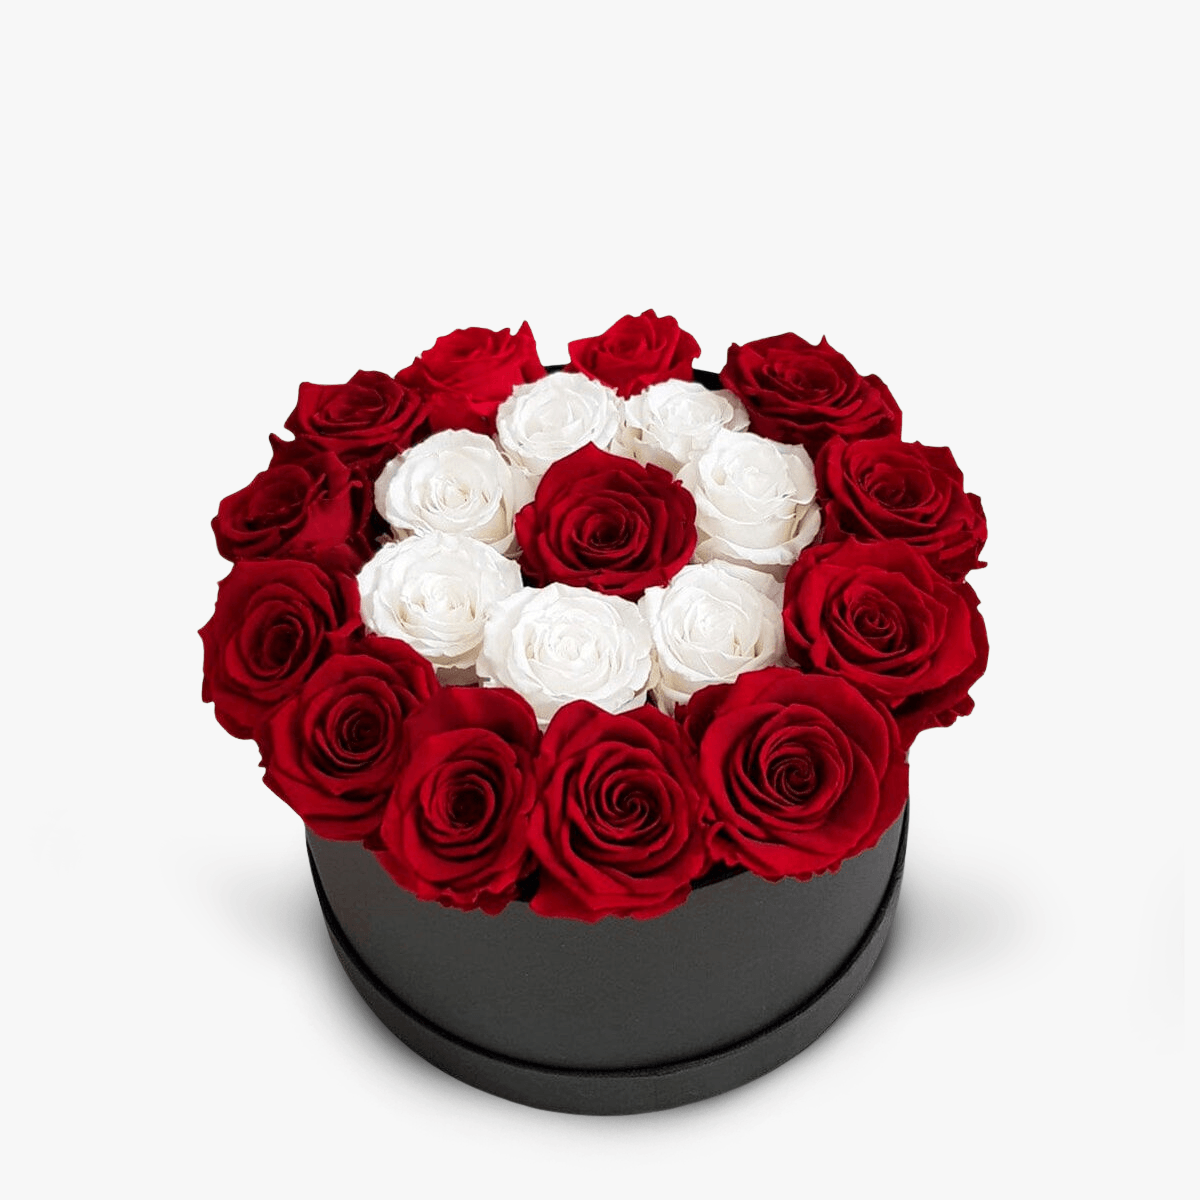 Cutie cu 23 trandafiri rosii si albi criogenati Cutie cu 23 trandafiri rosii si albi criogentai – Standard